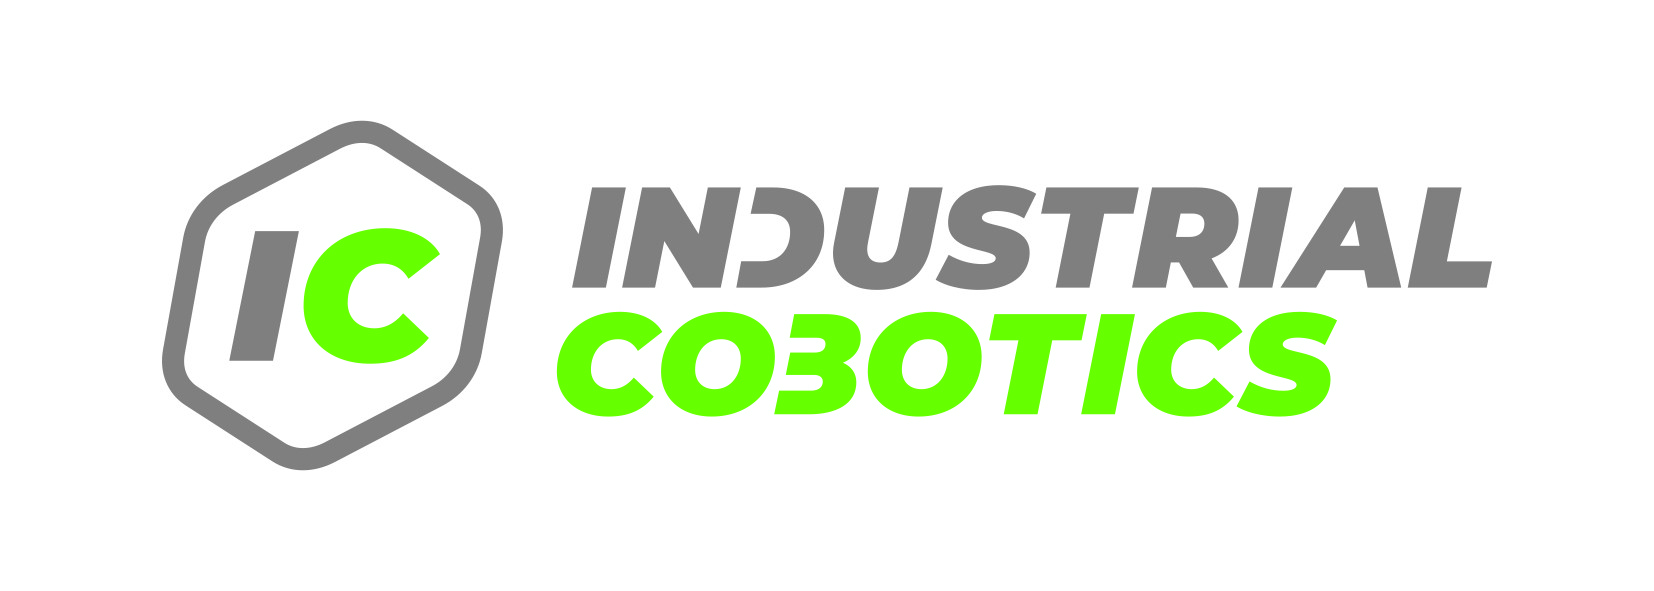 Industrial Cobotics fc